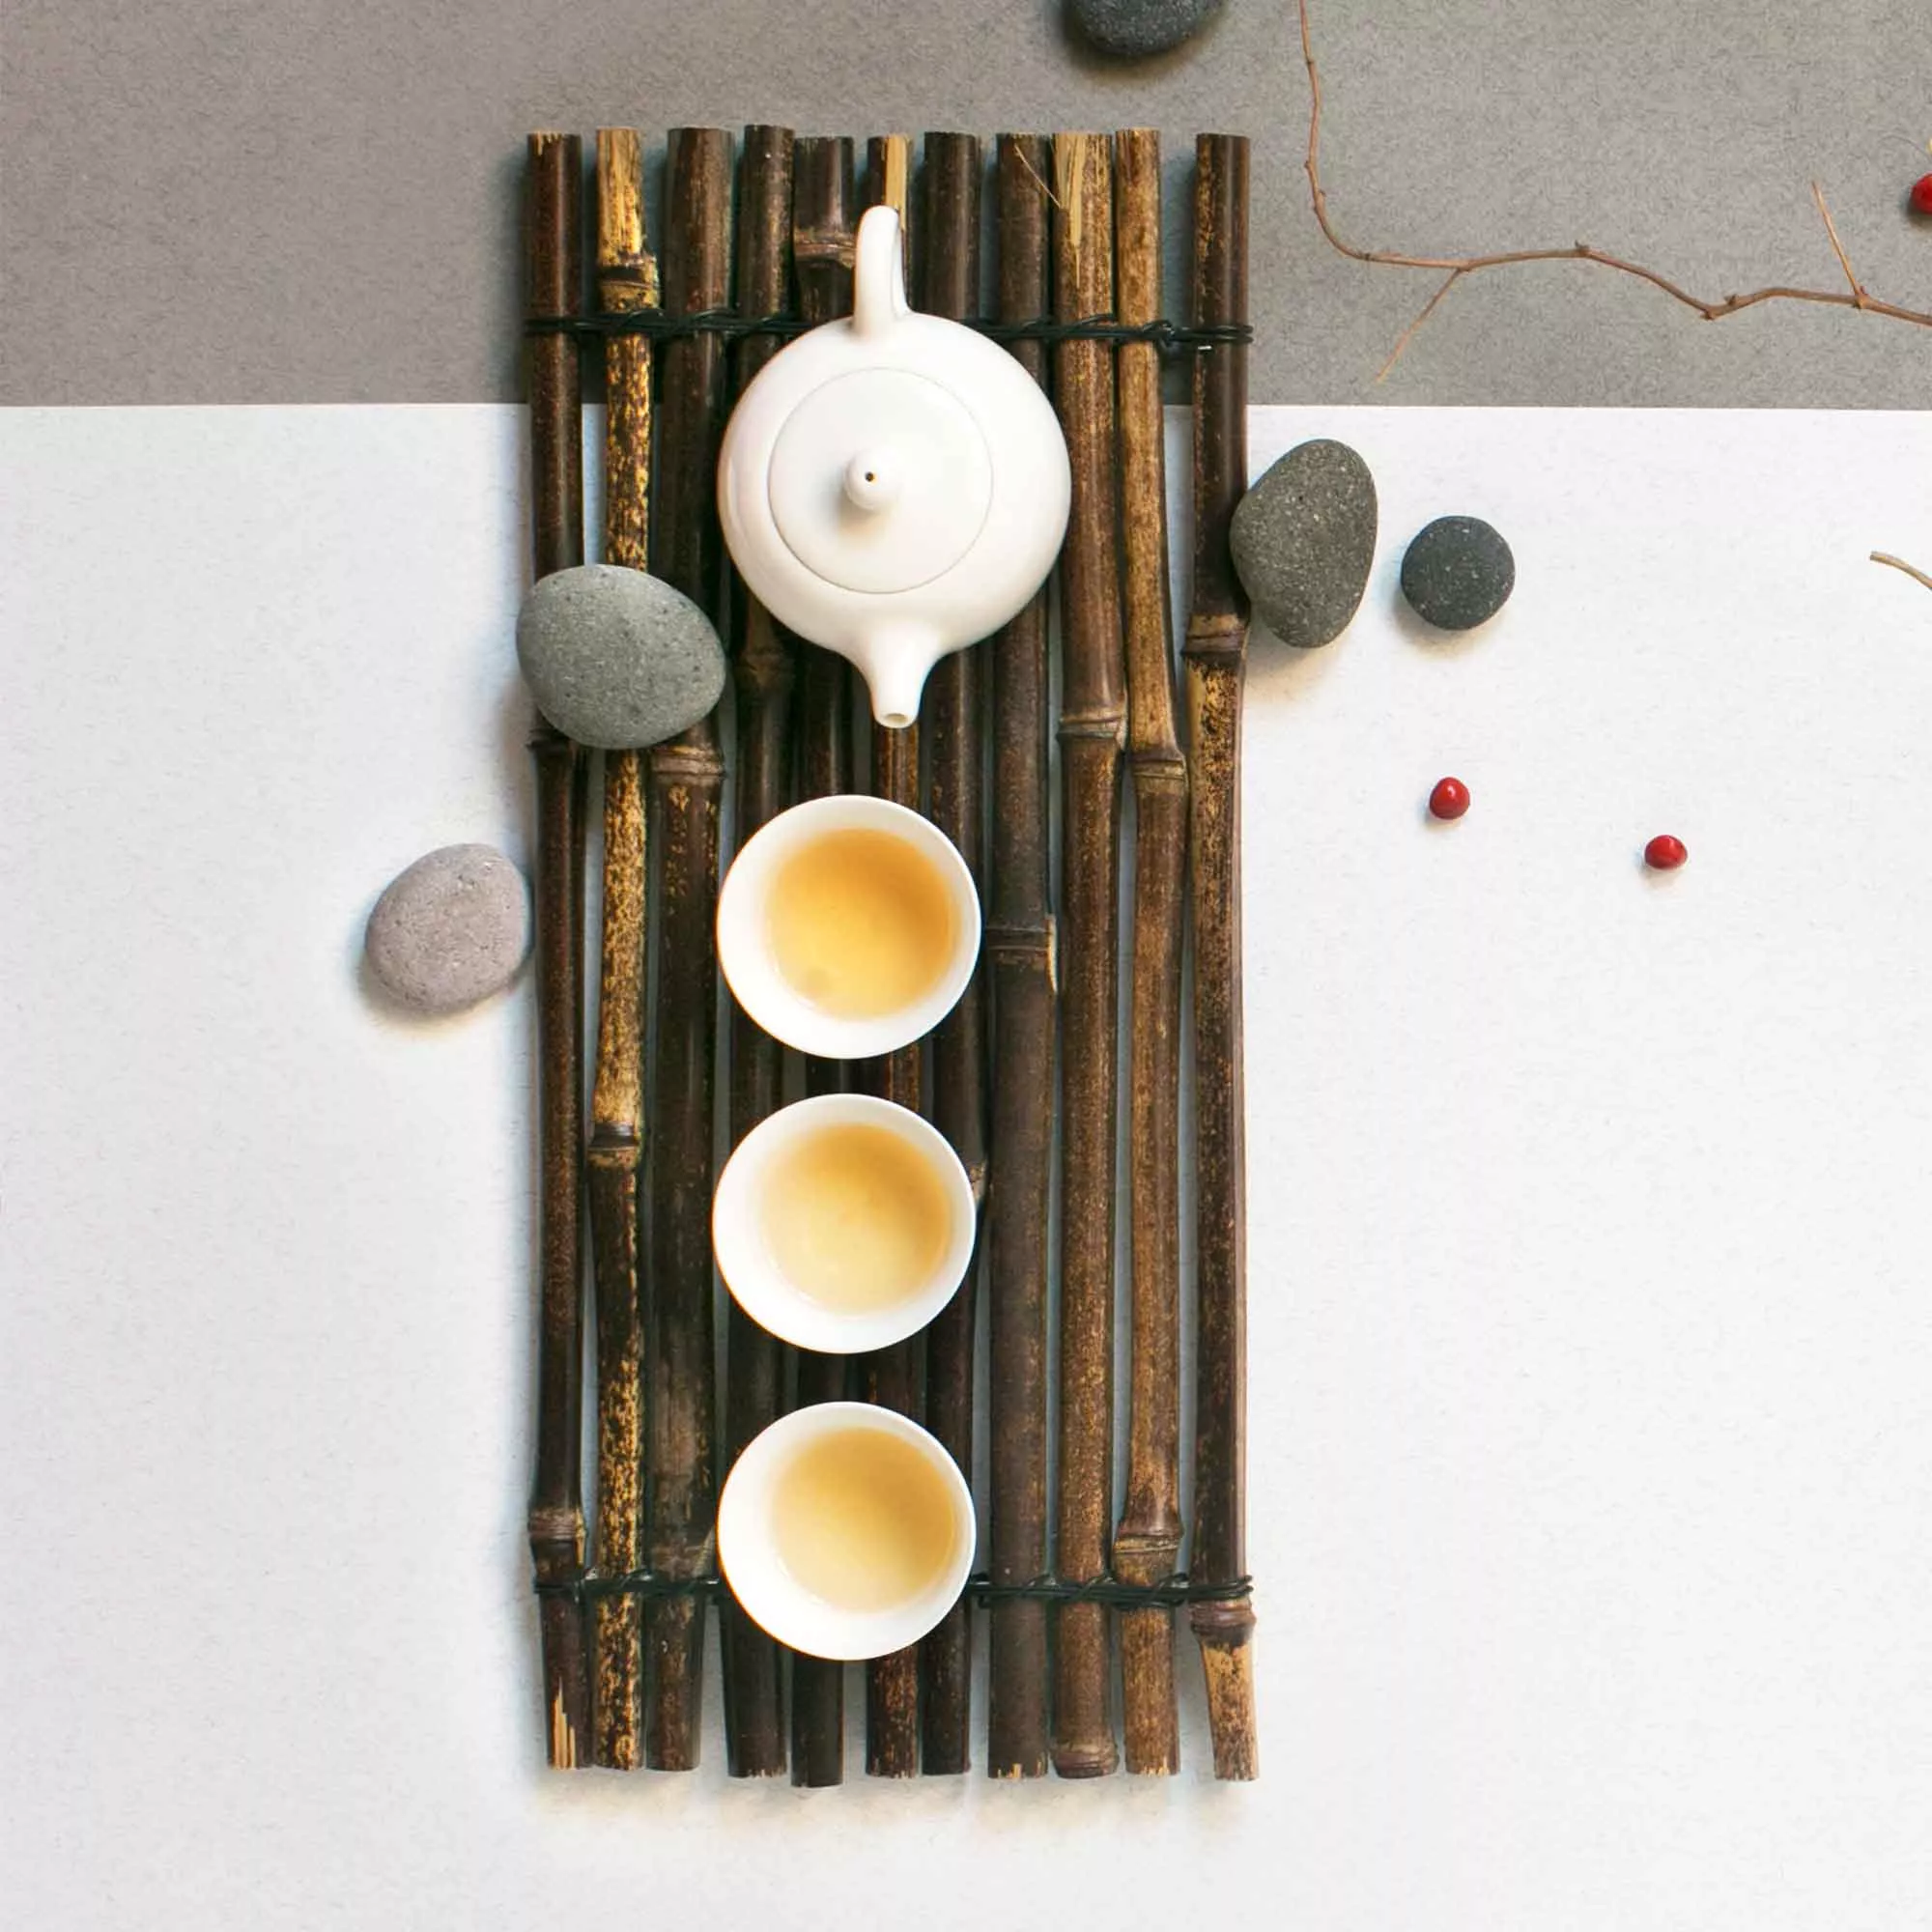 Die Teezeremonie ist auch eine Zen Art.